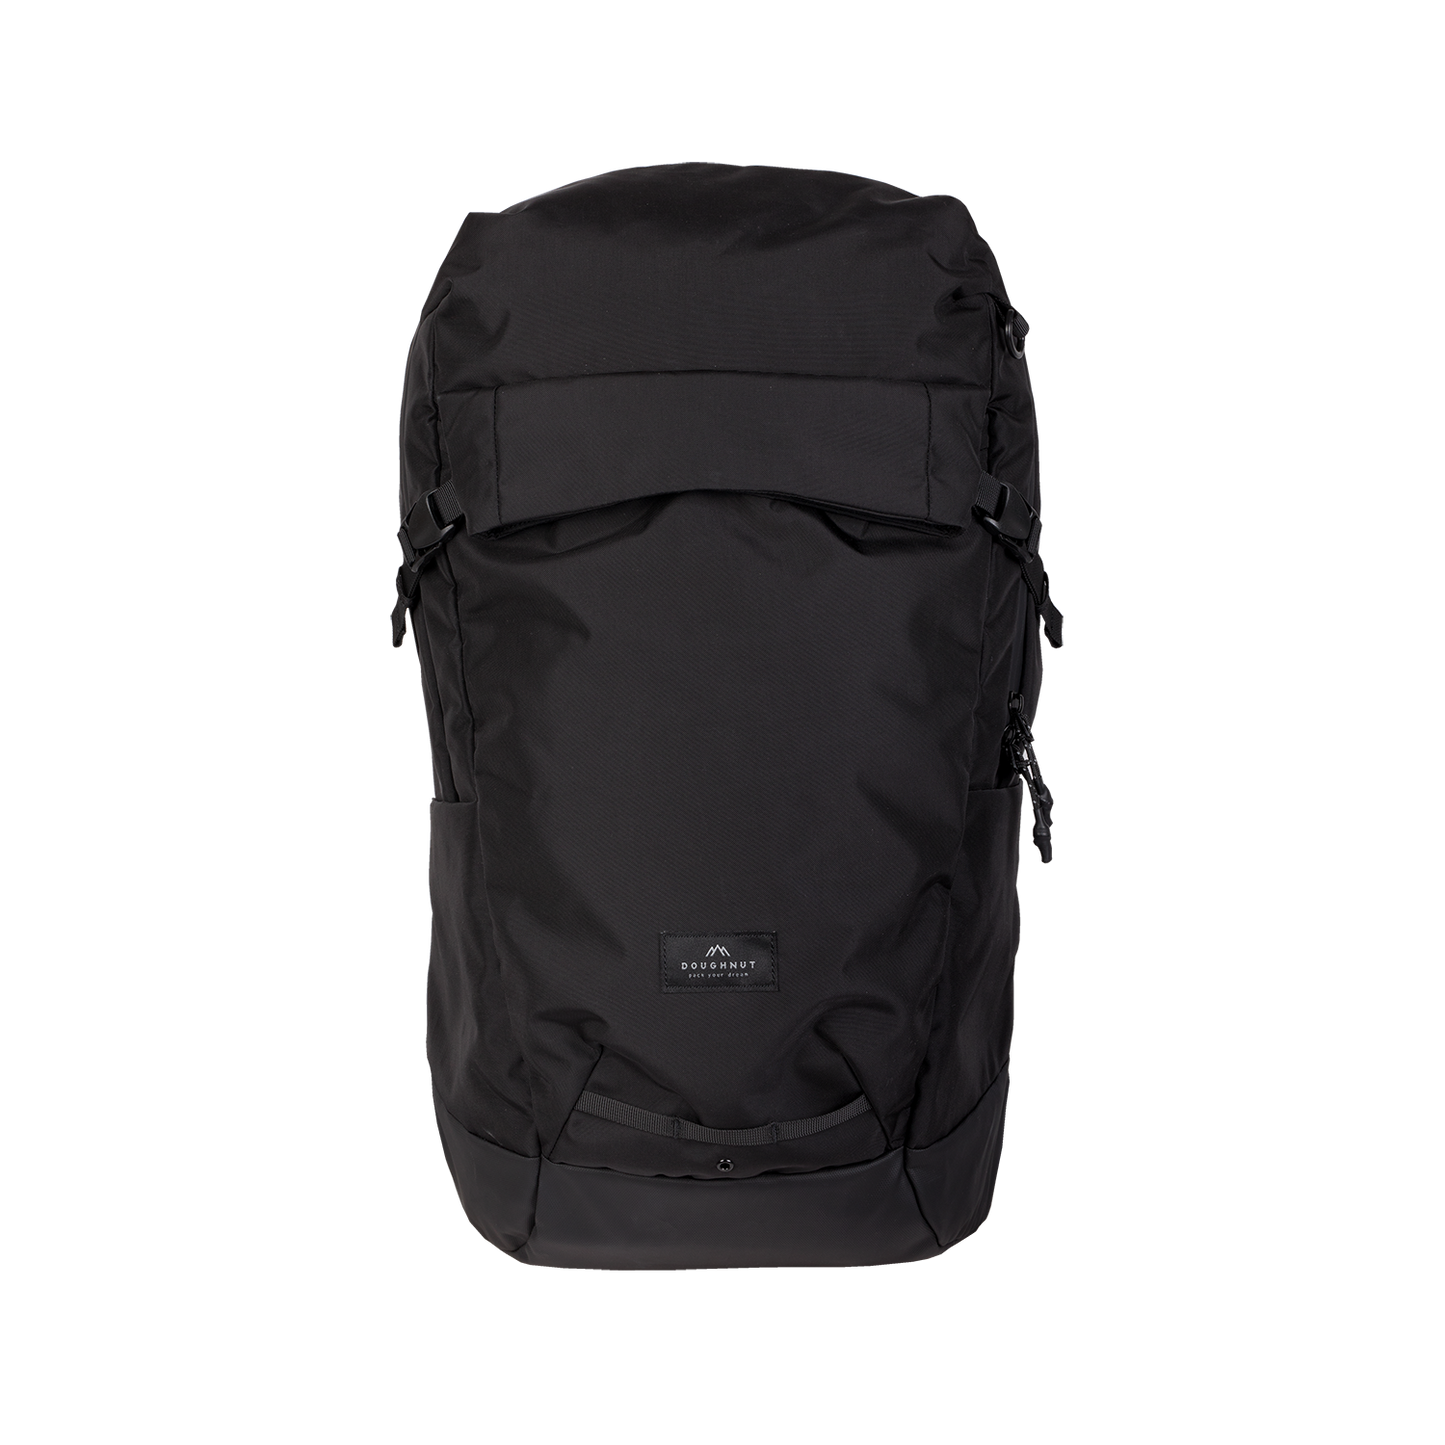 Astir Large Backpack